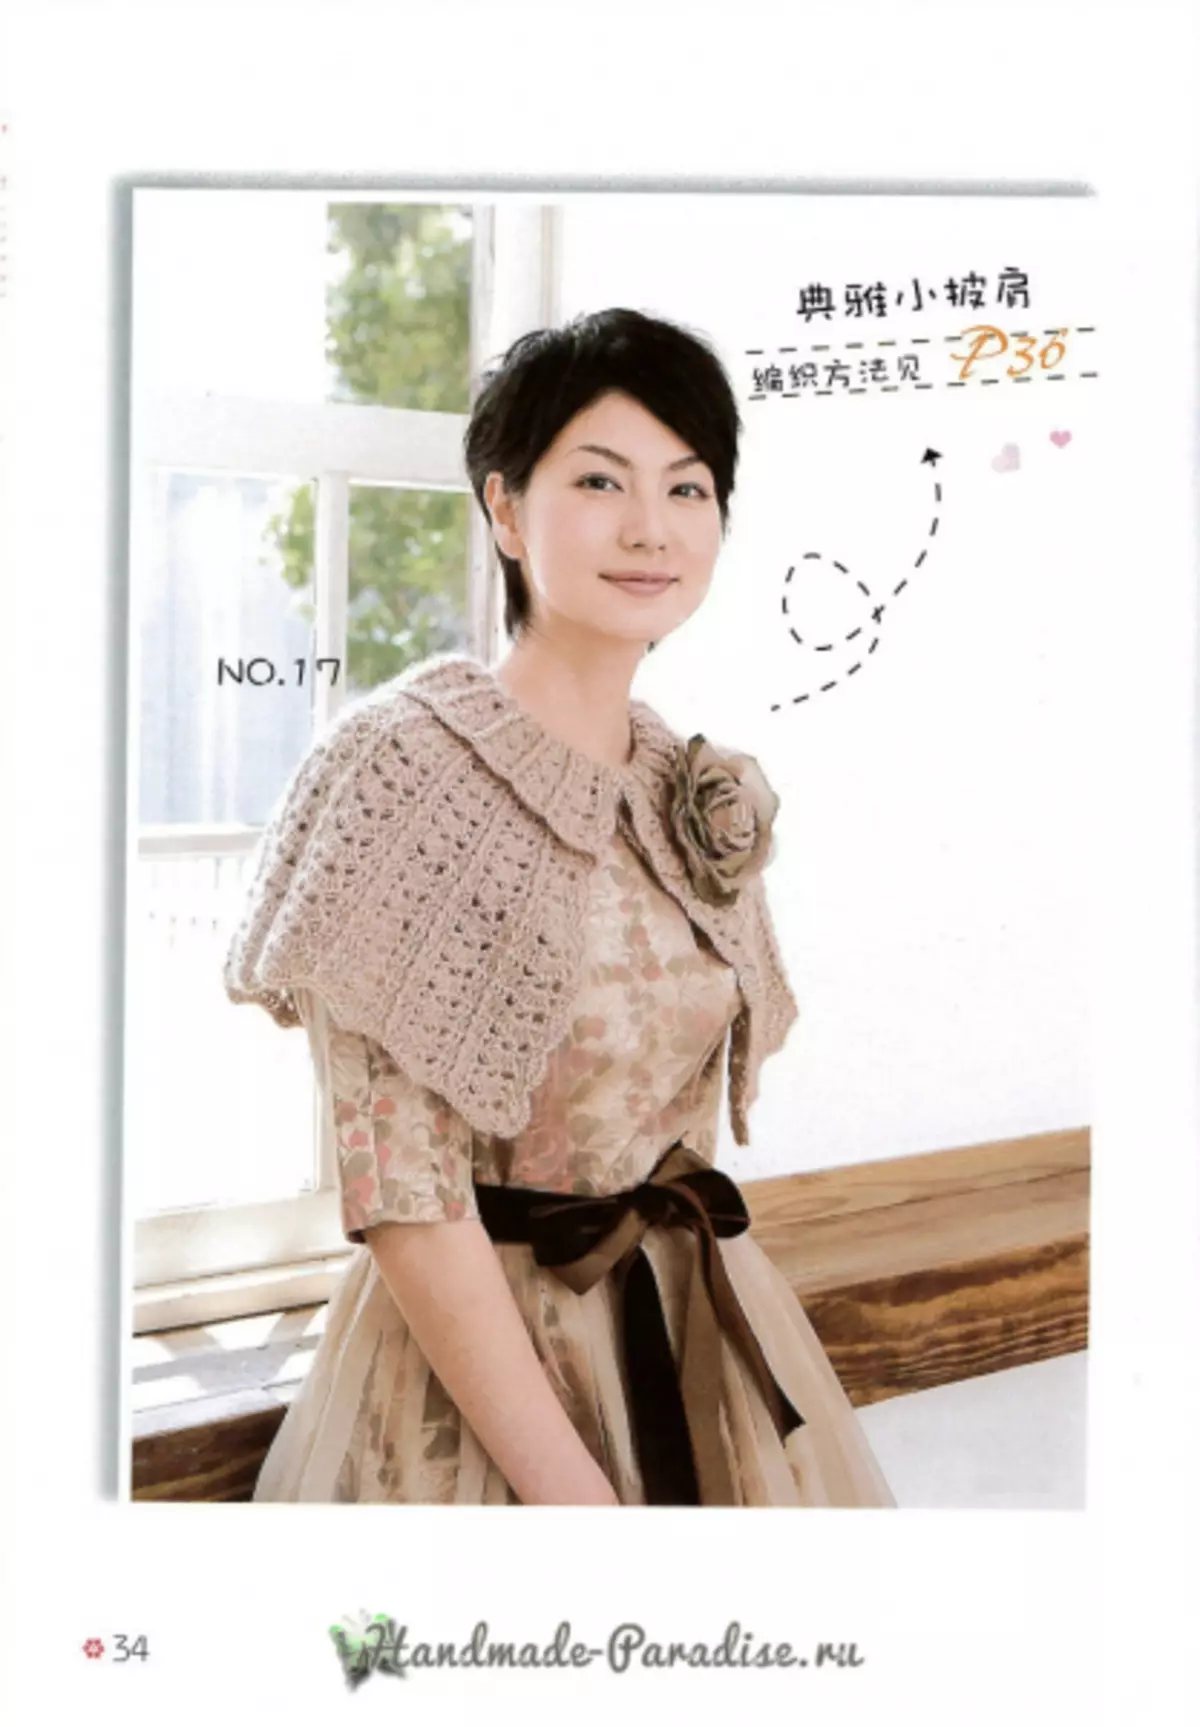 Knitting cape lan poncho. Majalah Jepang kanthi skema